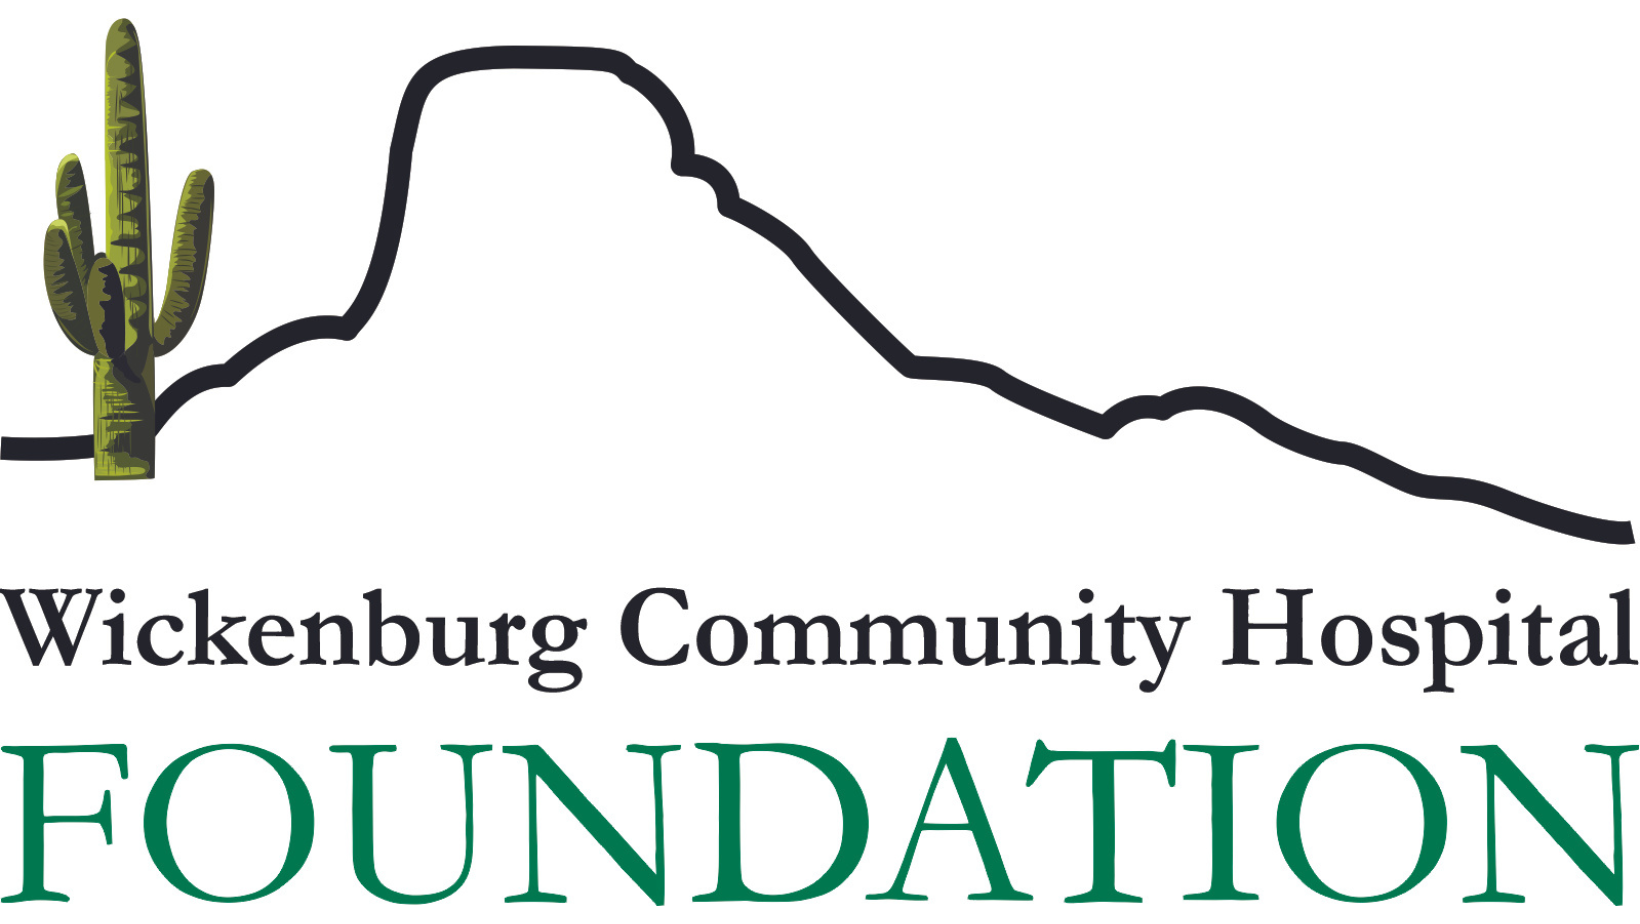 Wickenburg Community Hospital Foundation logo